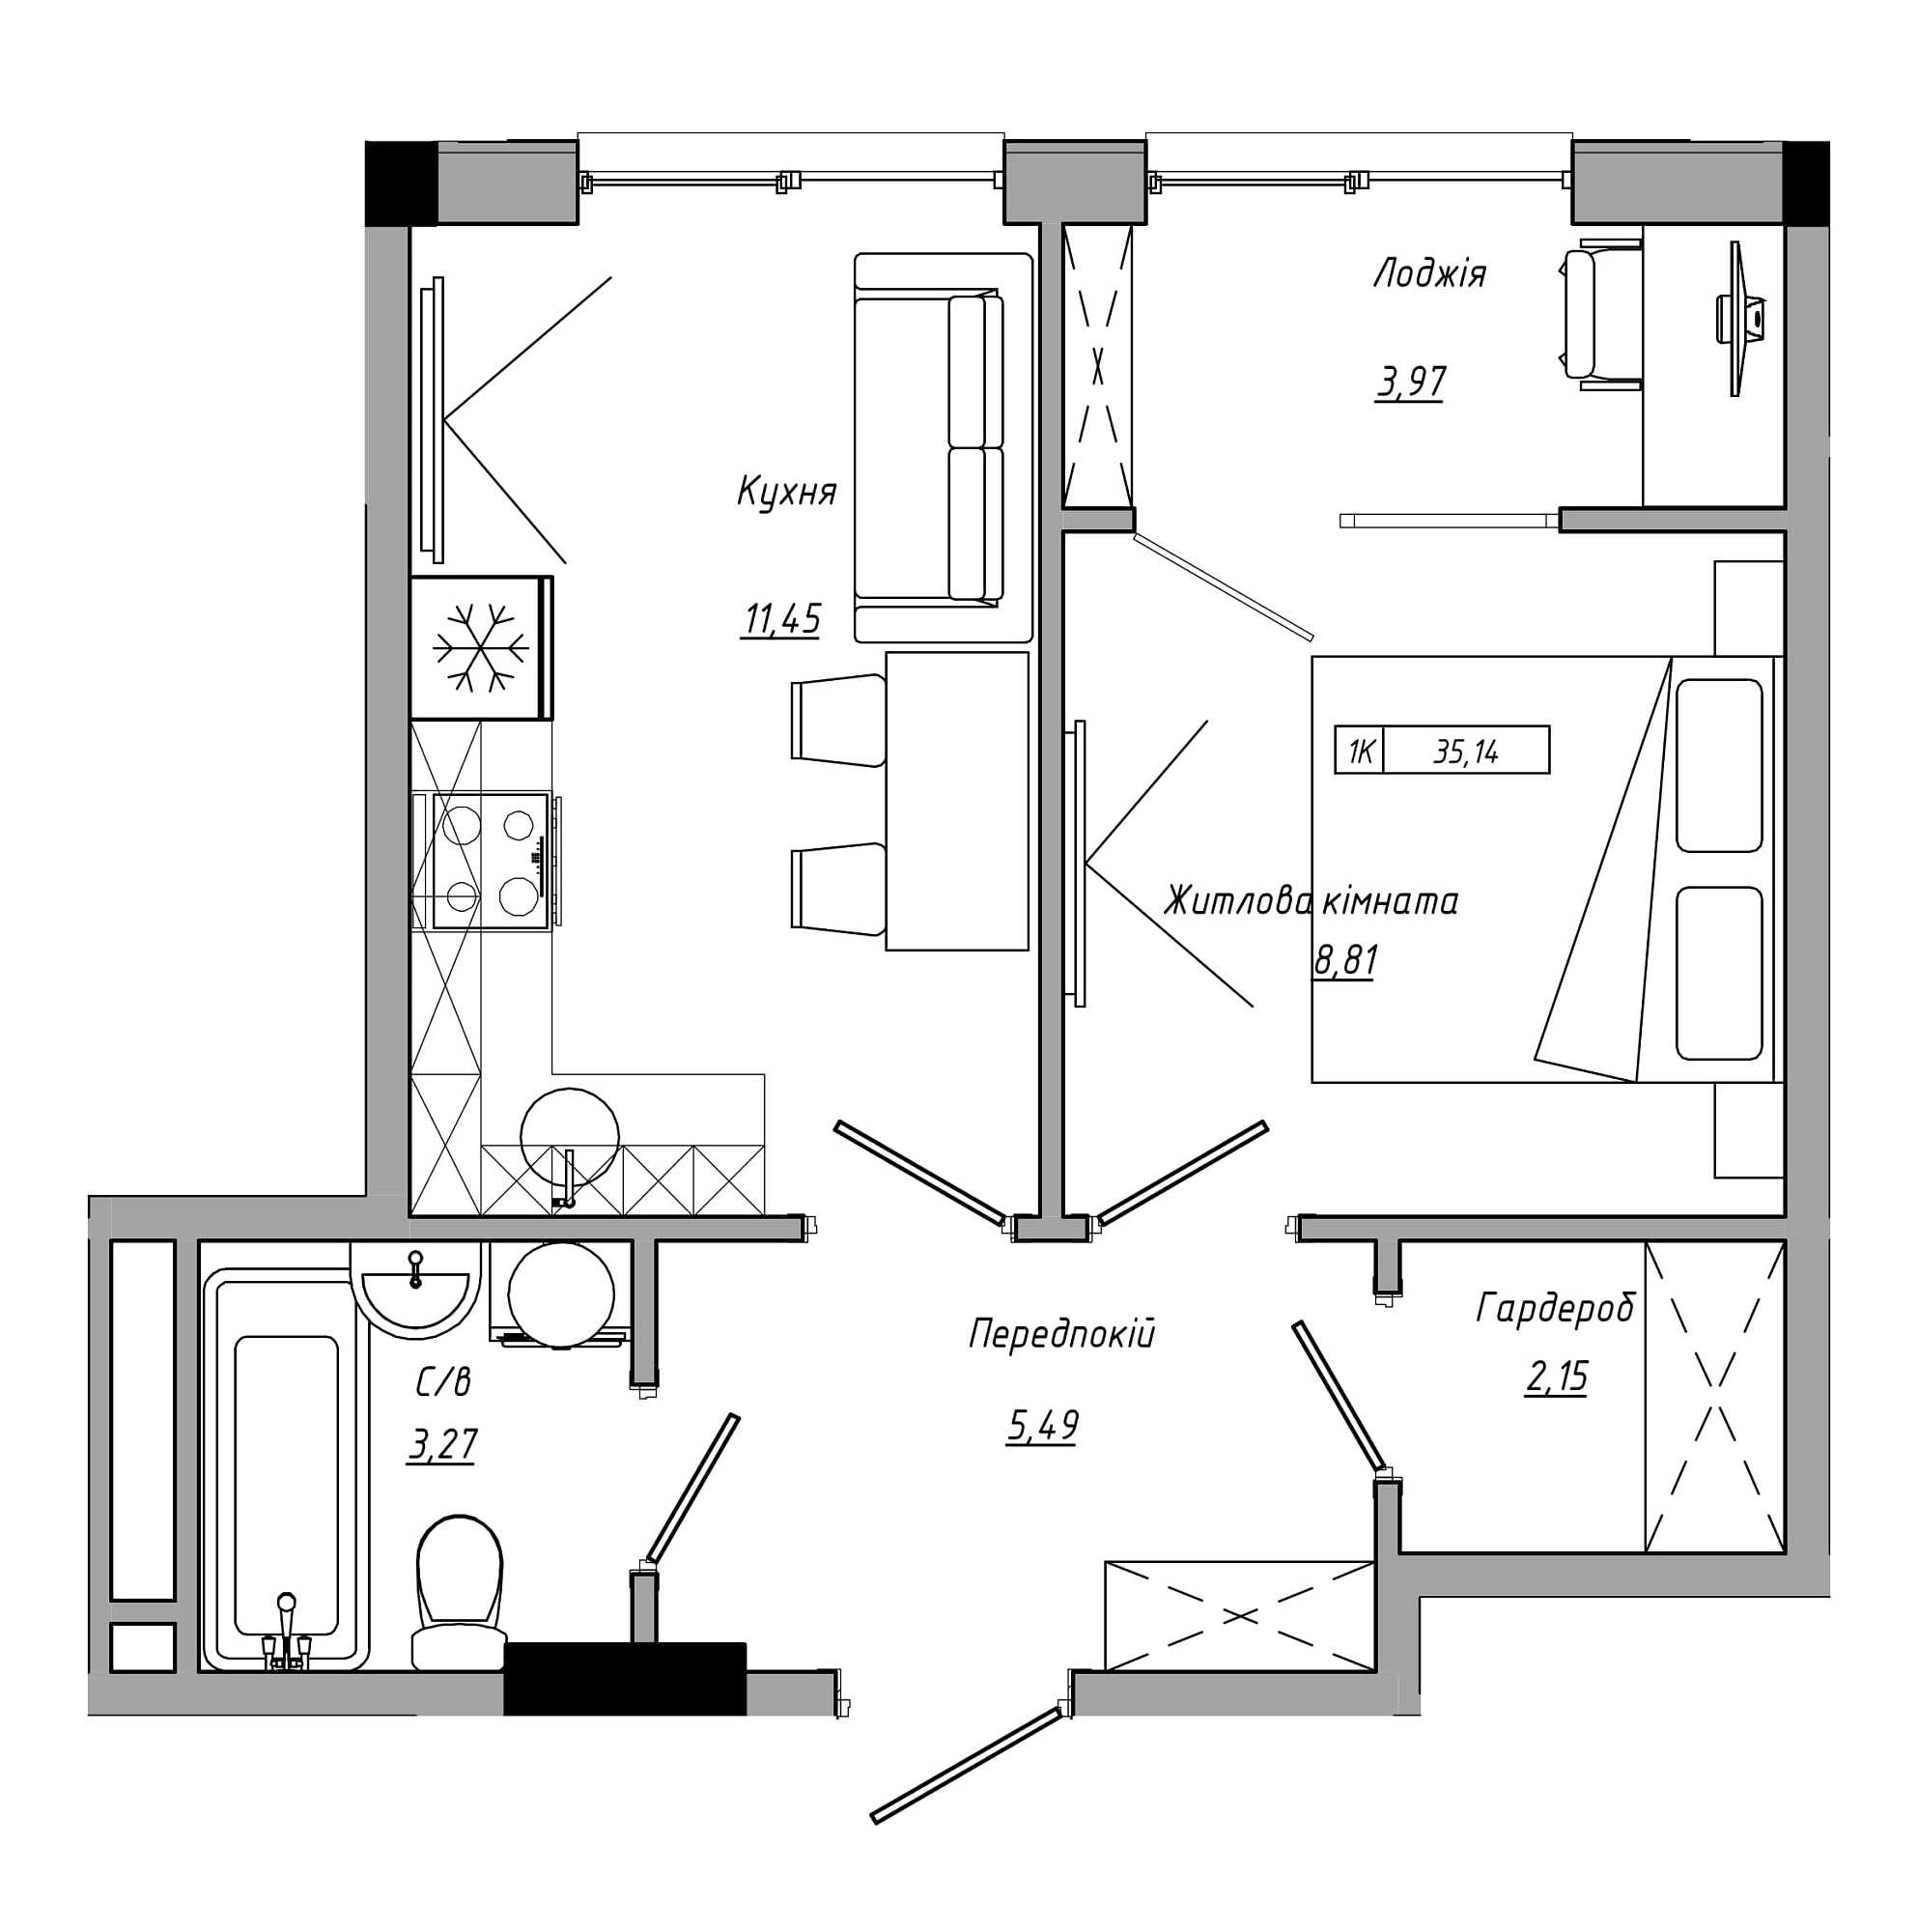 Планування 1-к квартира площею 35.14м2, AB-21-08/00013.